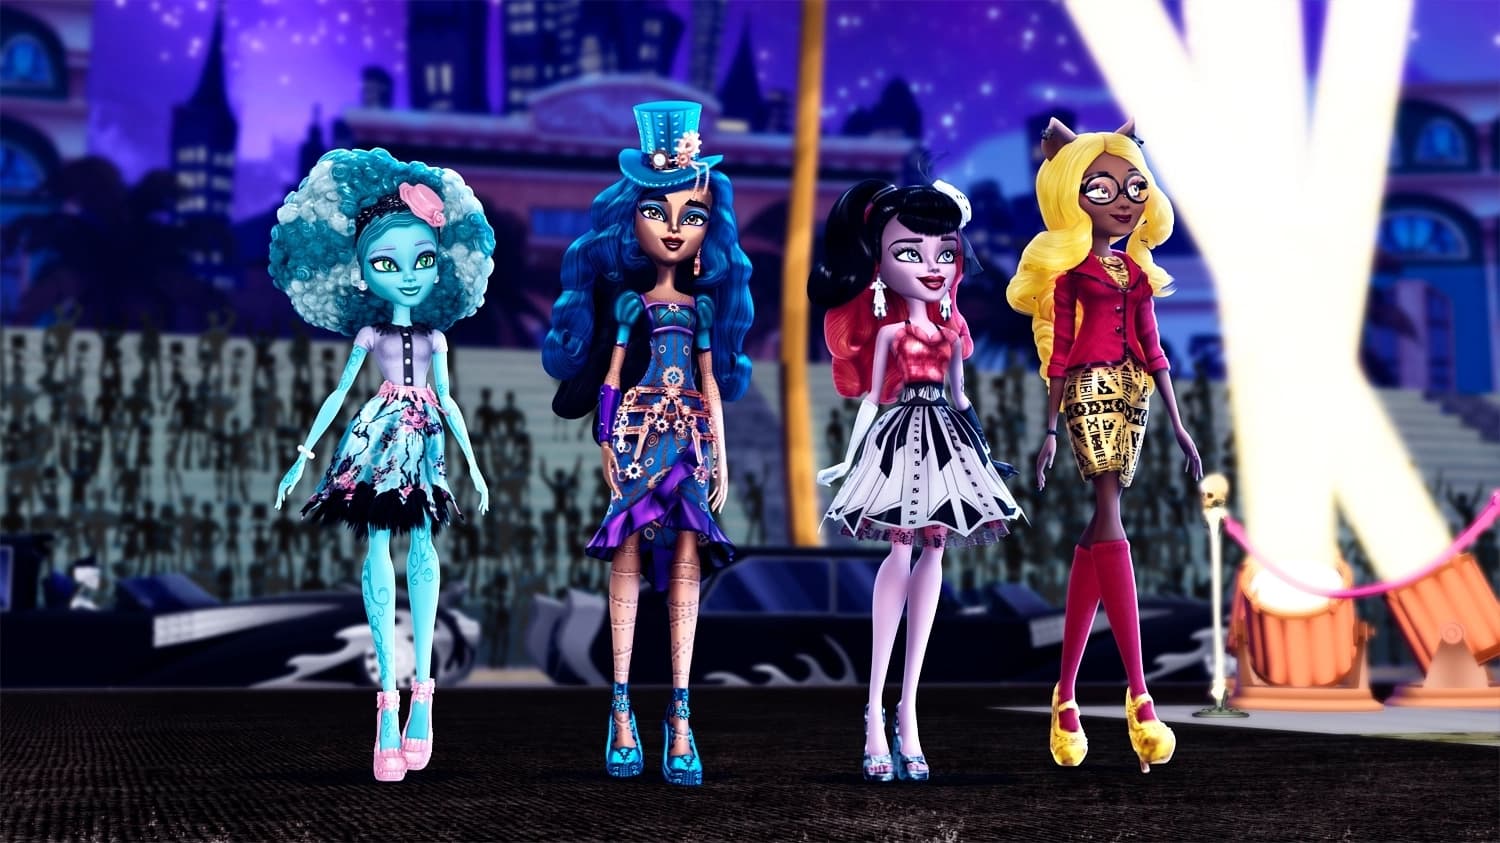 Monster High: ¡Monstruos! ¡Cámara! ¡Acción!